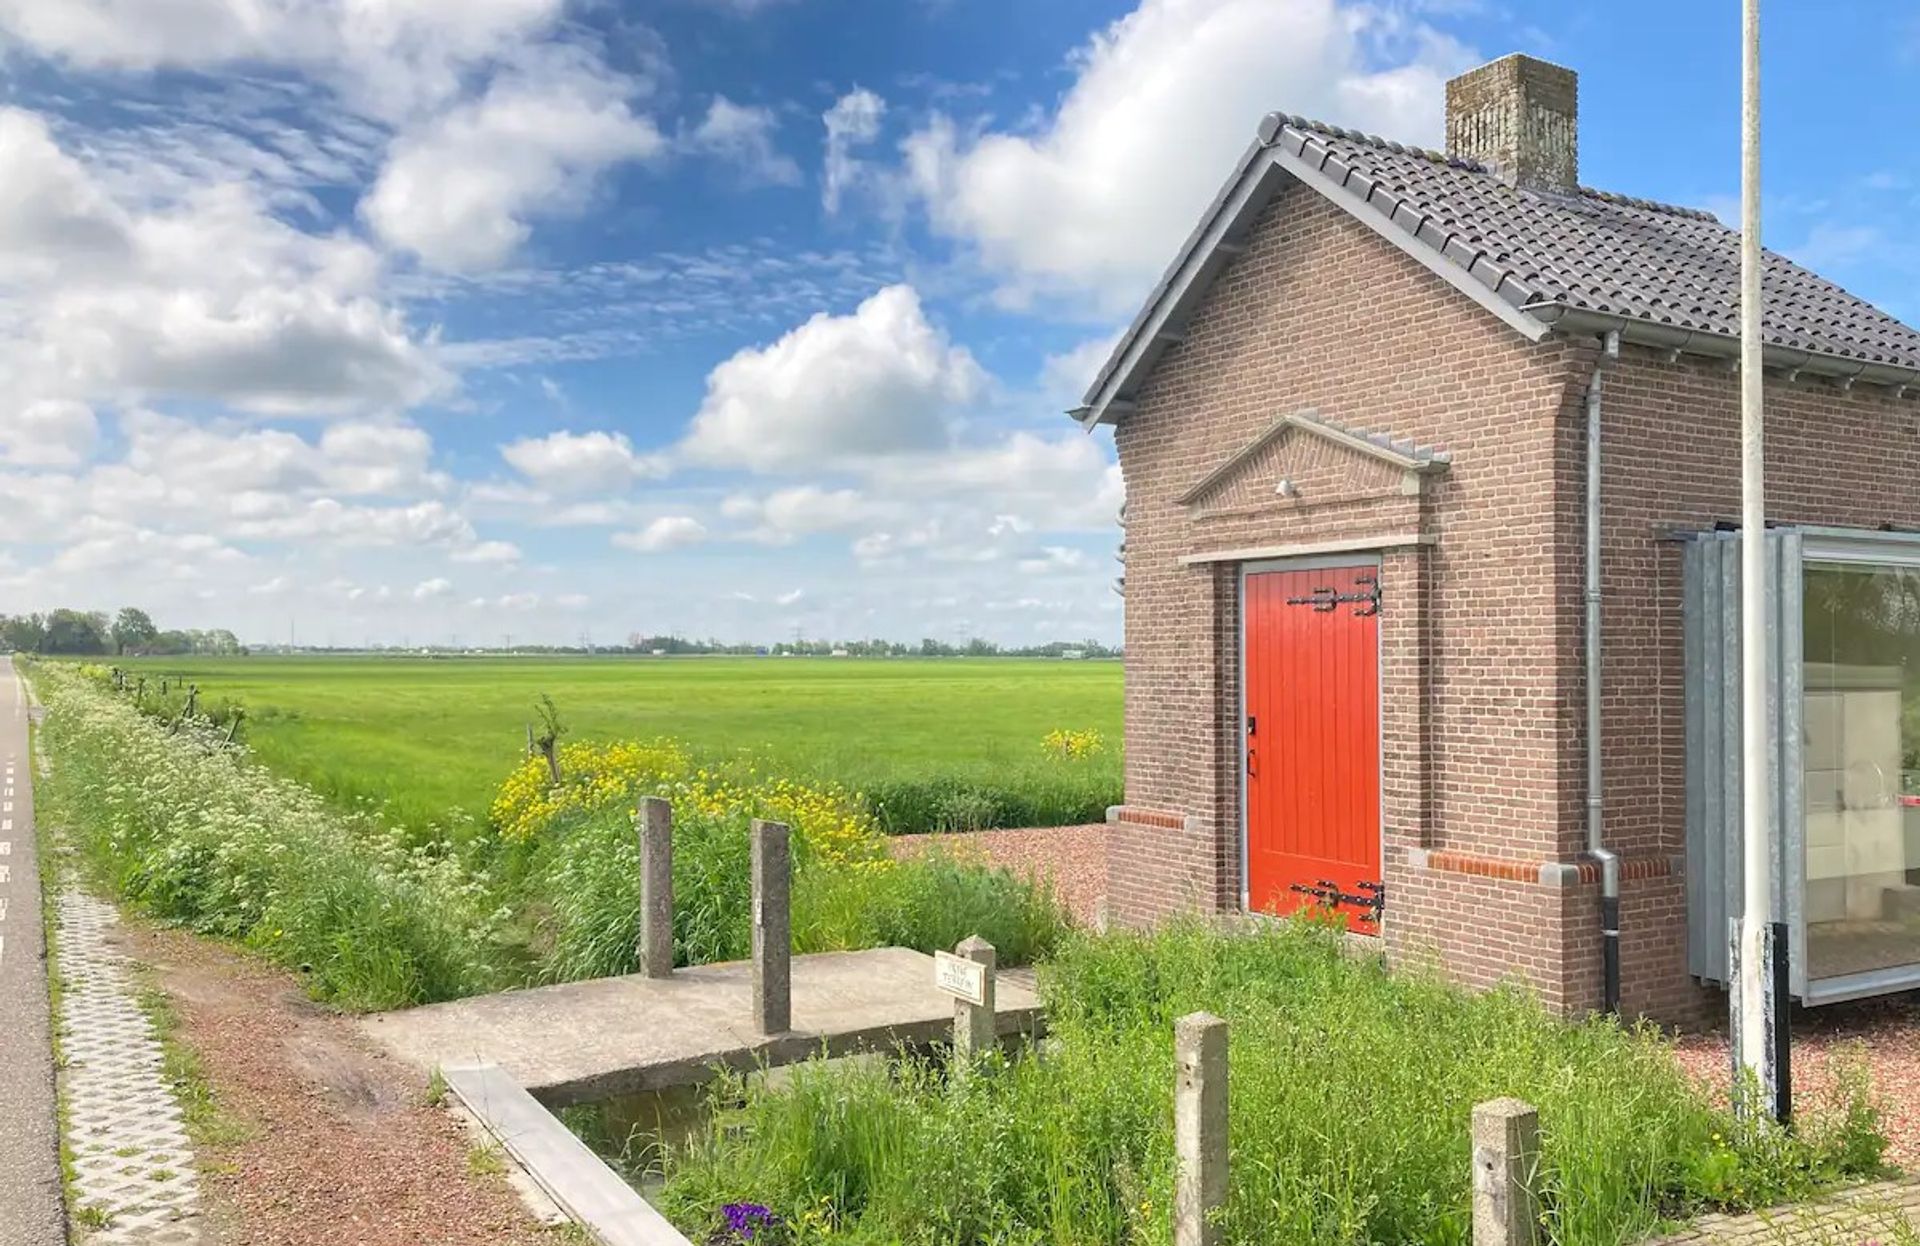 kleinste airbnb nederland